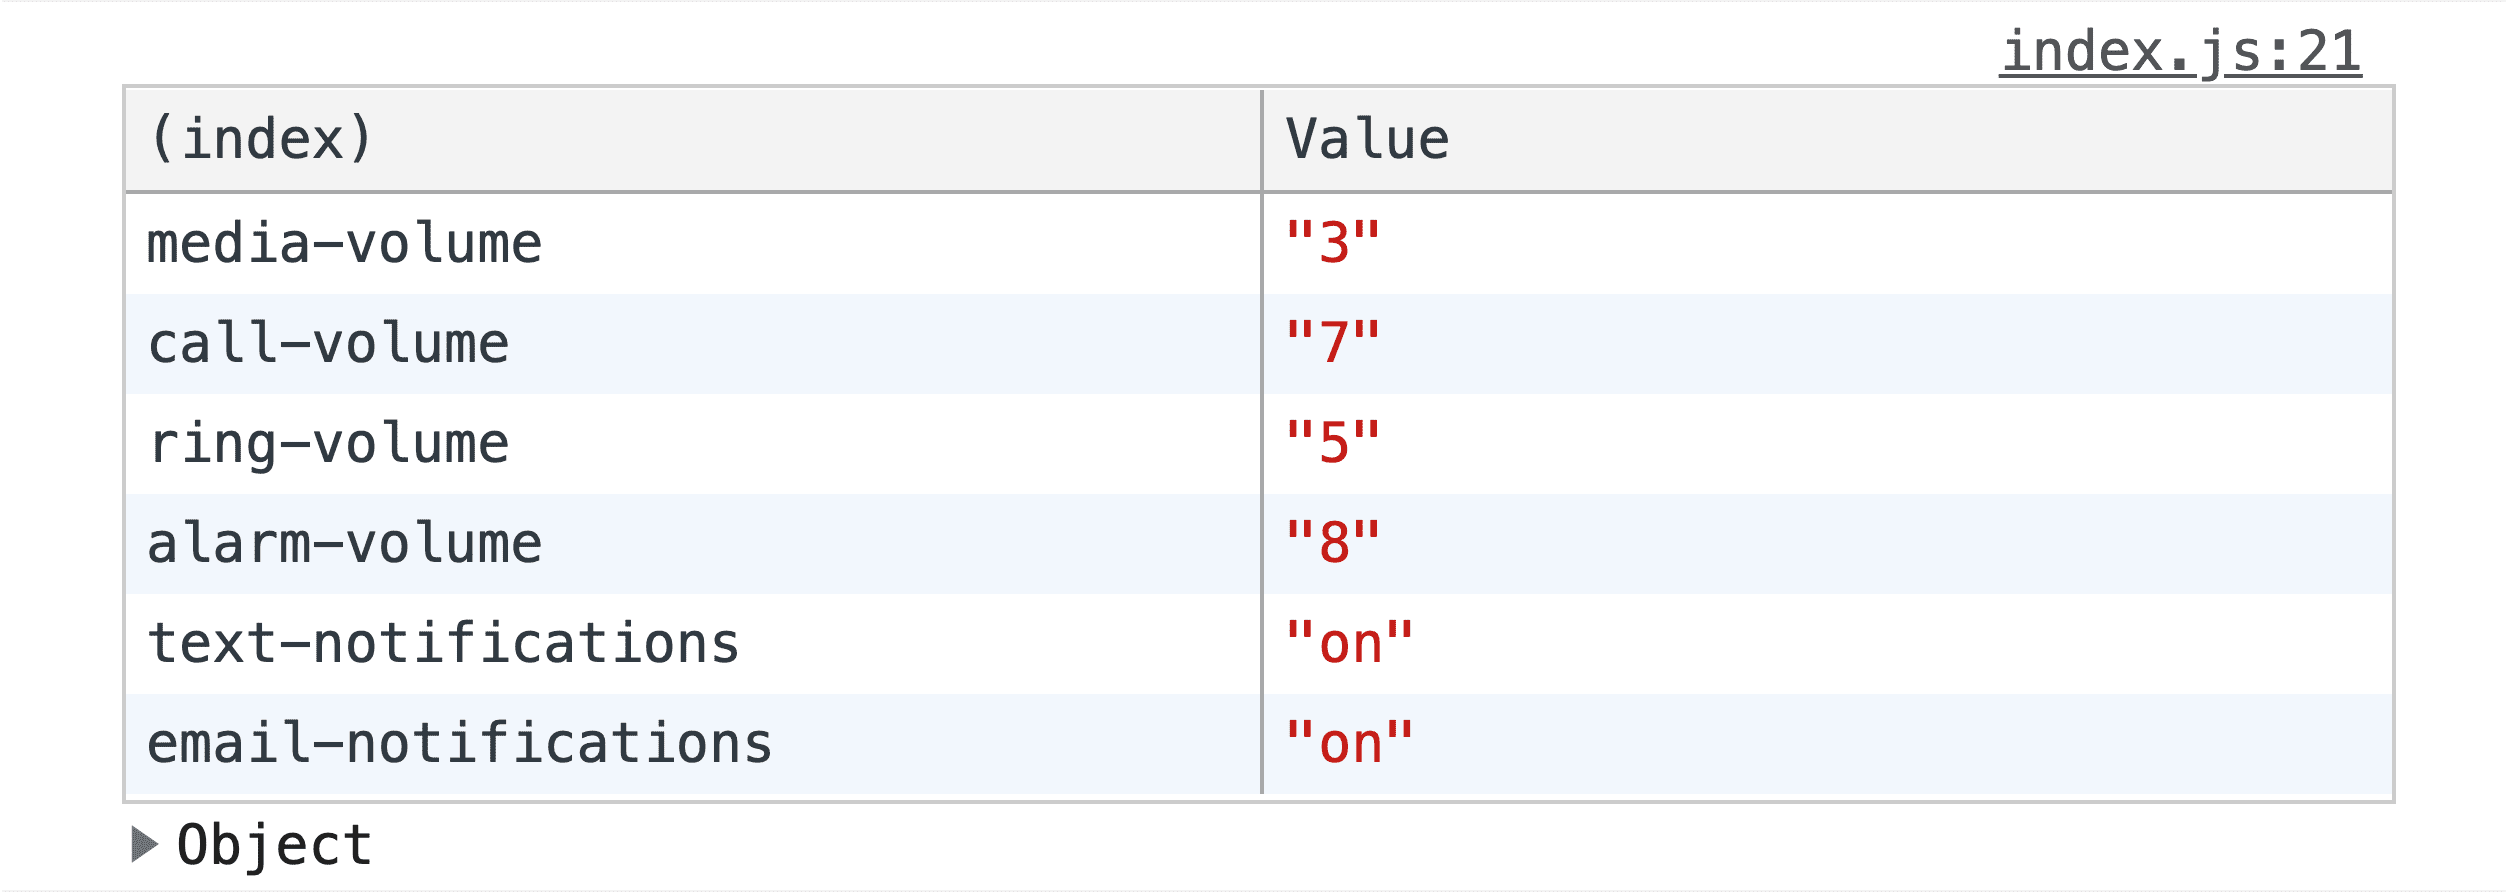 Снимок экрана результатов console.table(), где данные формы показаны в таблице.